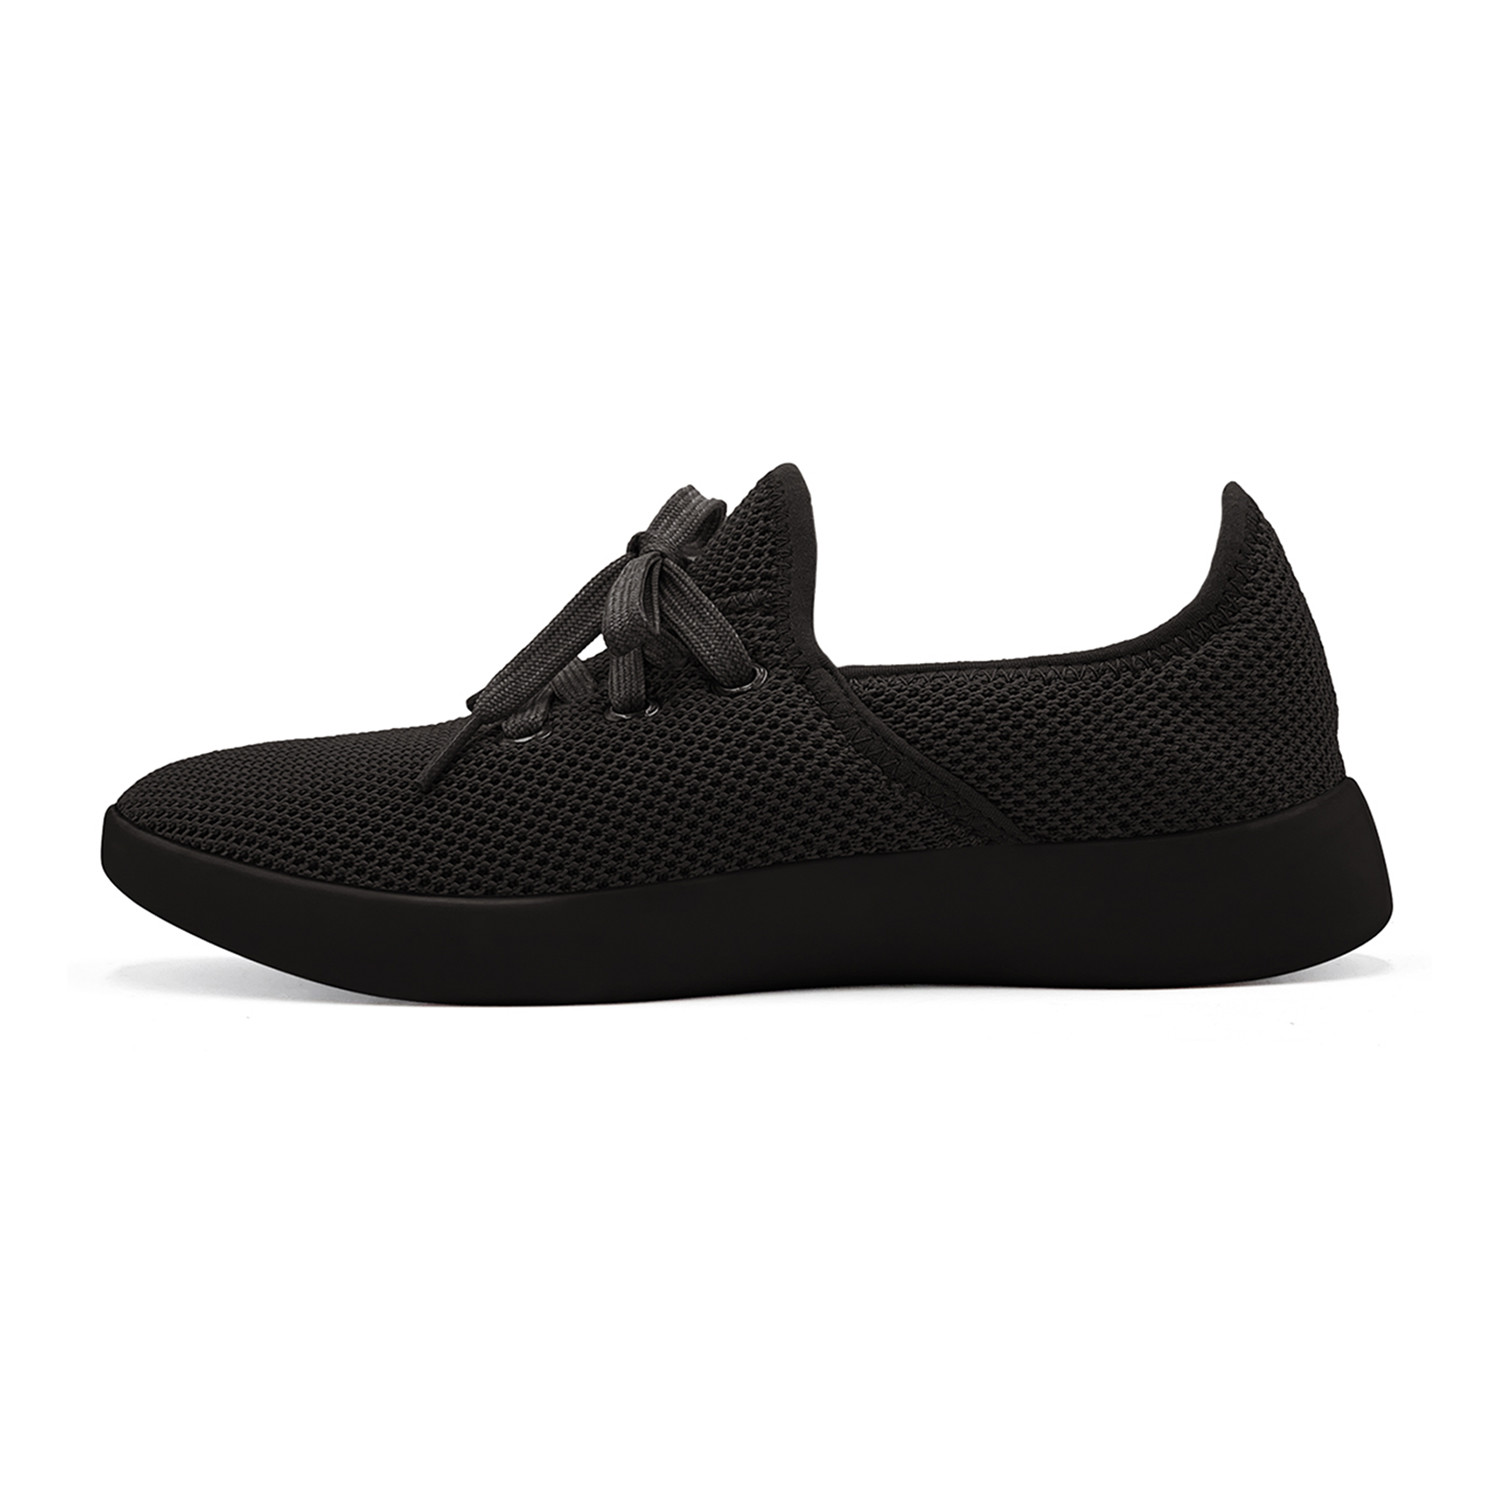 Women's Breezy Laced Shoes // Black (Women's US Size 9) - BauBax LLC ...